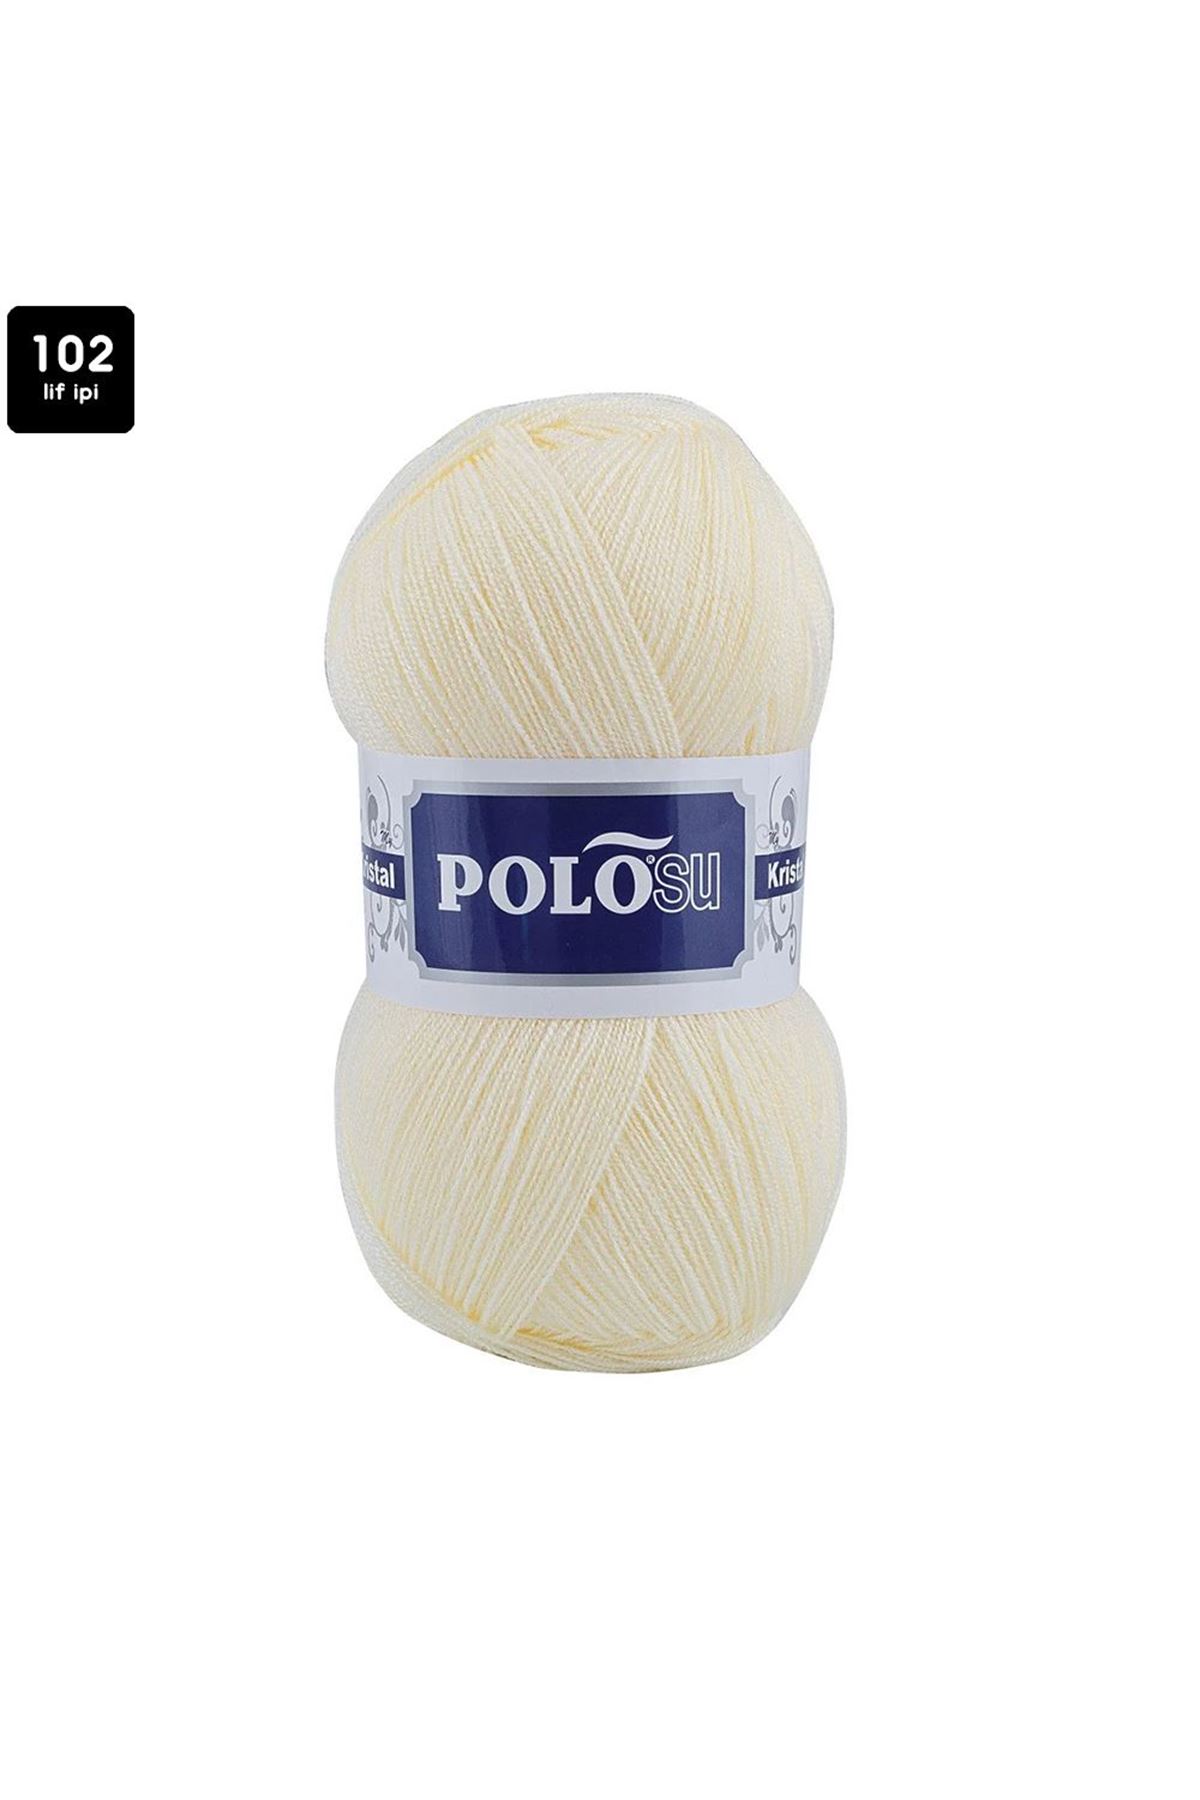 PoloSU My Kristal Renk No:102